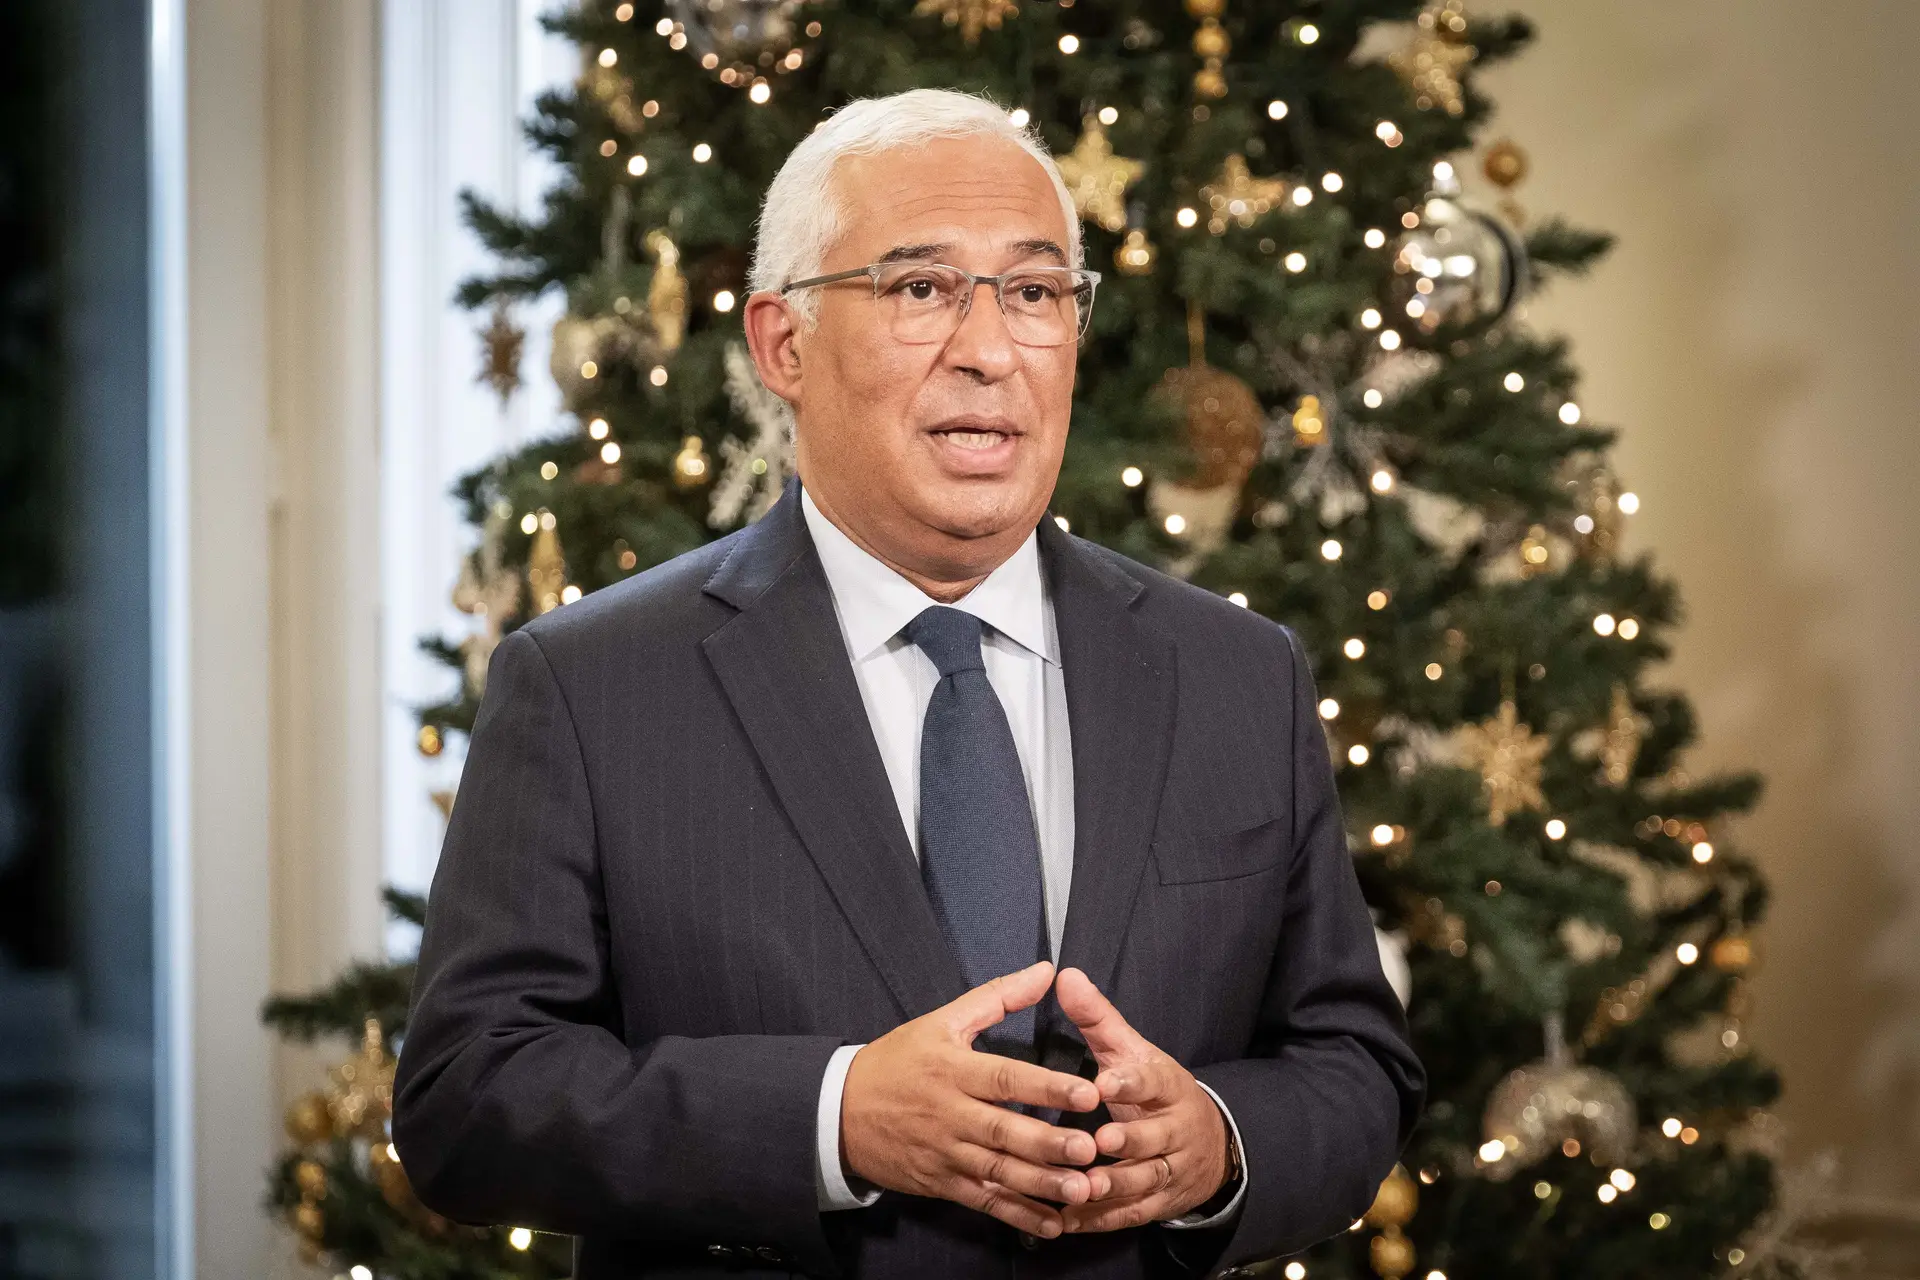 O sétimo Natal de António Costa como primeiro-ministro: o que disse e prometeu nos outros?